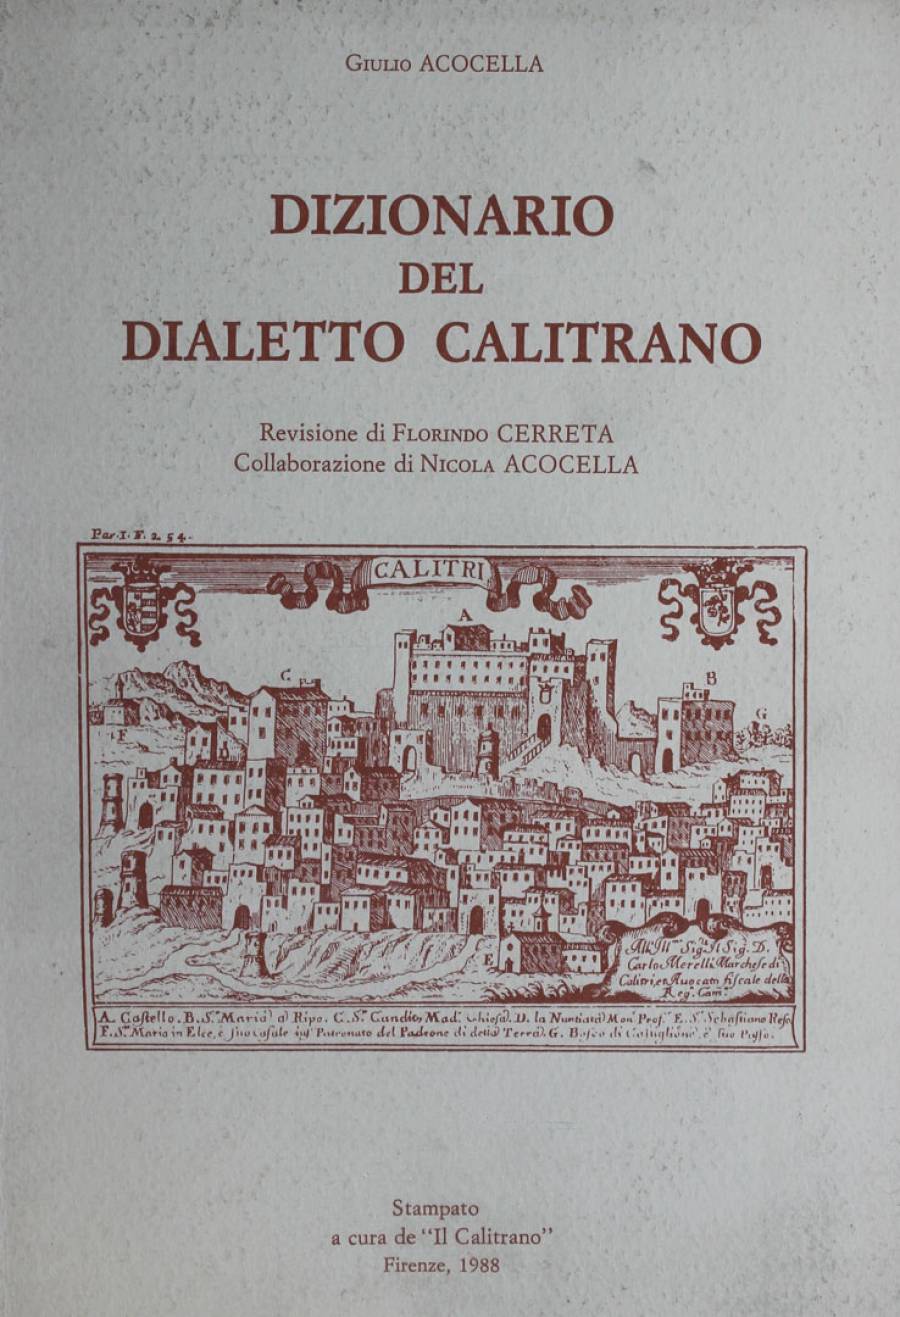 Dizionario etimologico del dialetto calabrese - Rete Italiana di Cultura  Popolare